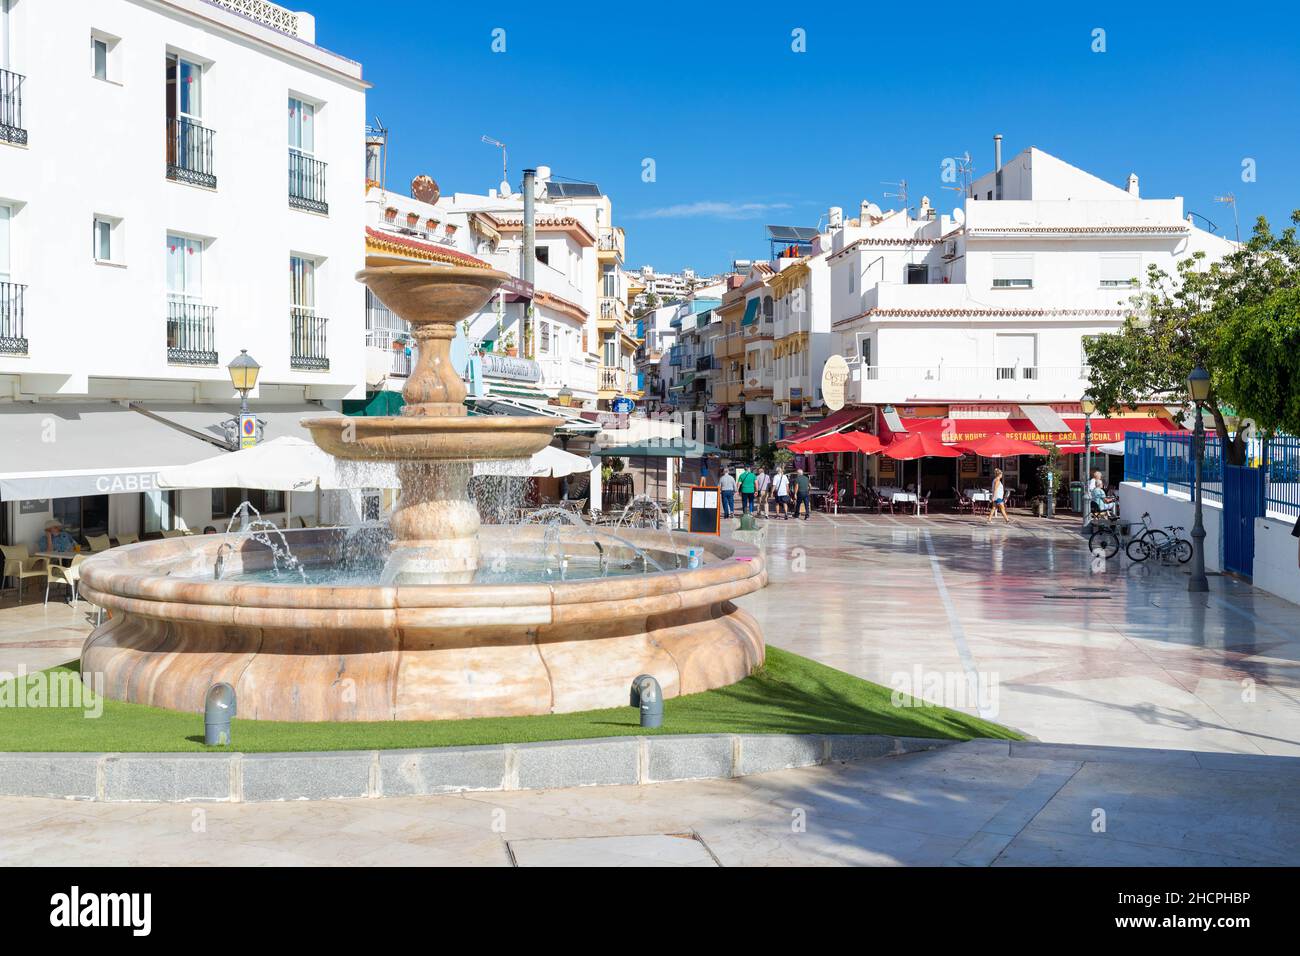 Place de la ville avec fontaine dans le quartier de la carihuela, Torremolinos, Costa del sol, Espagne. Banque D'Images